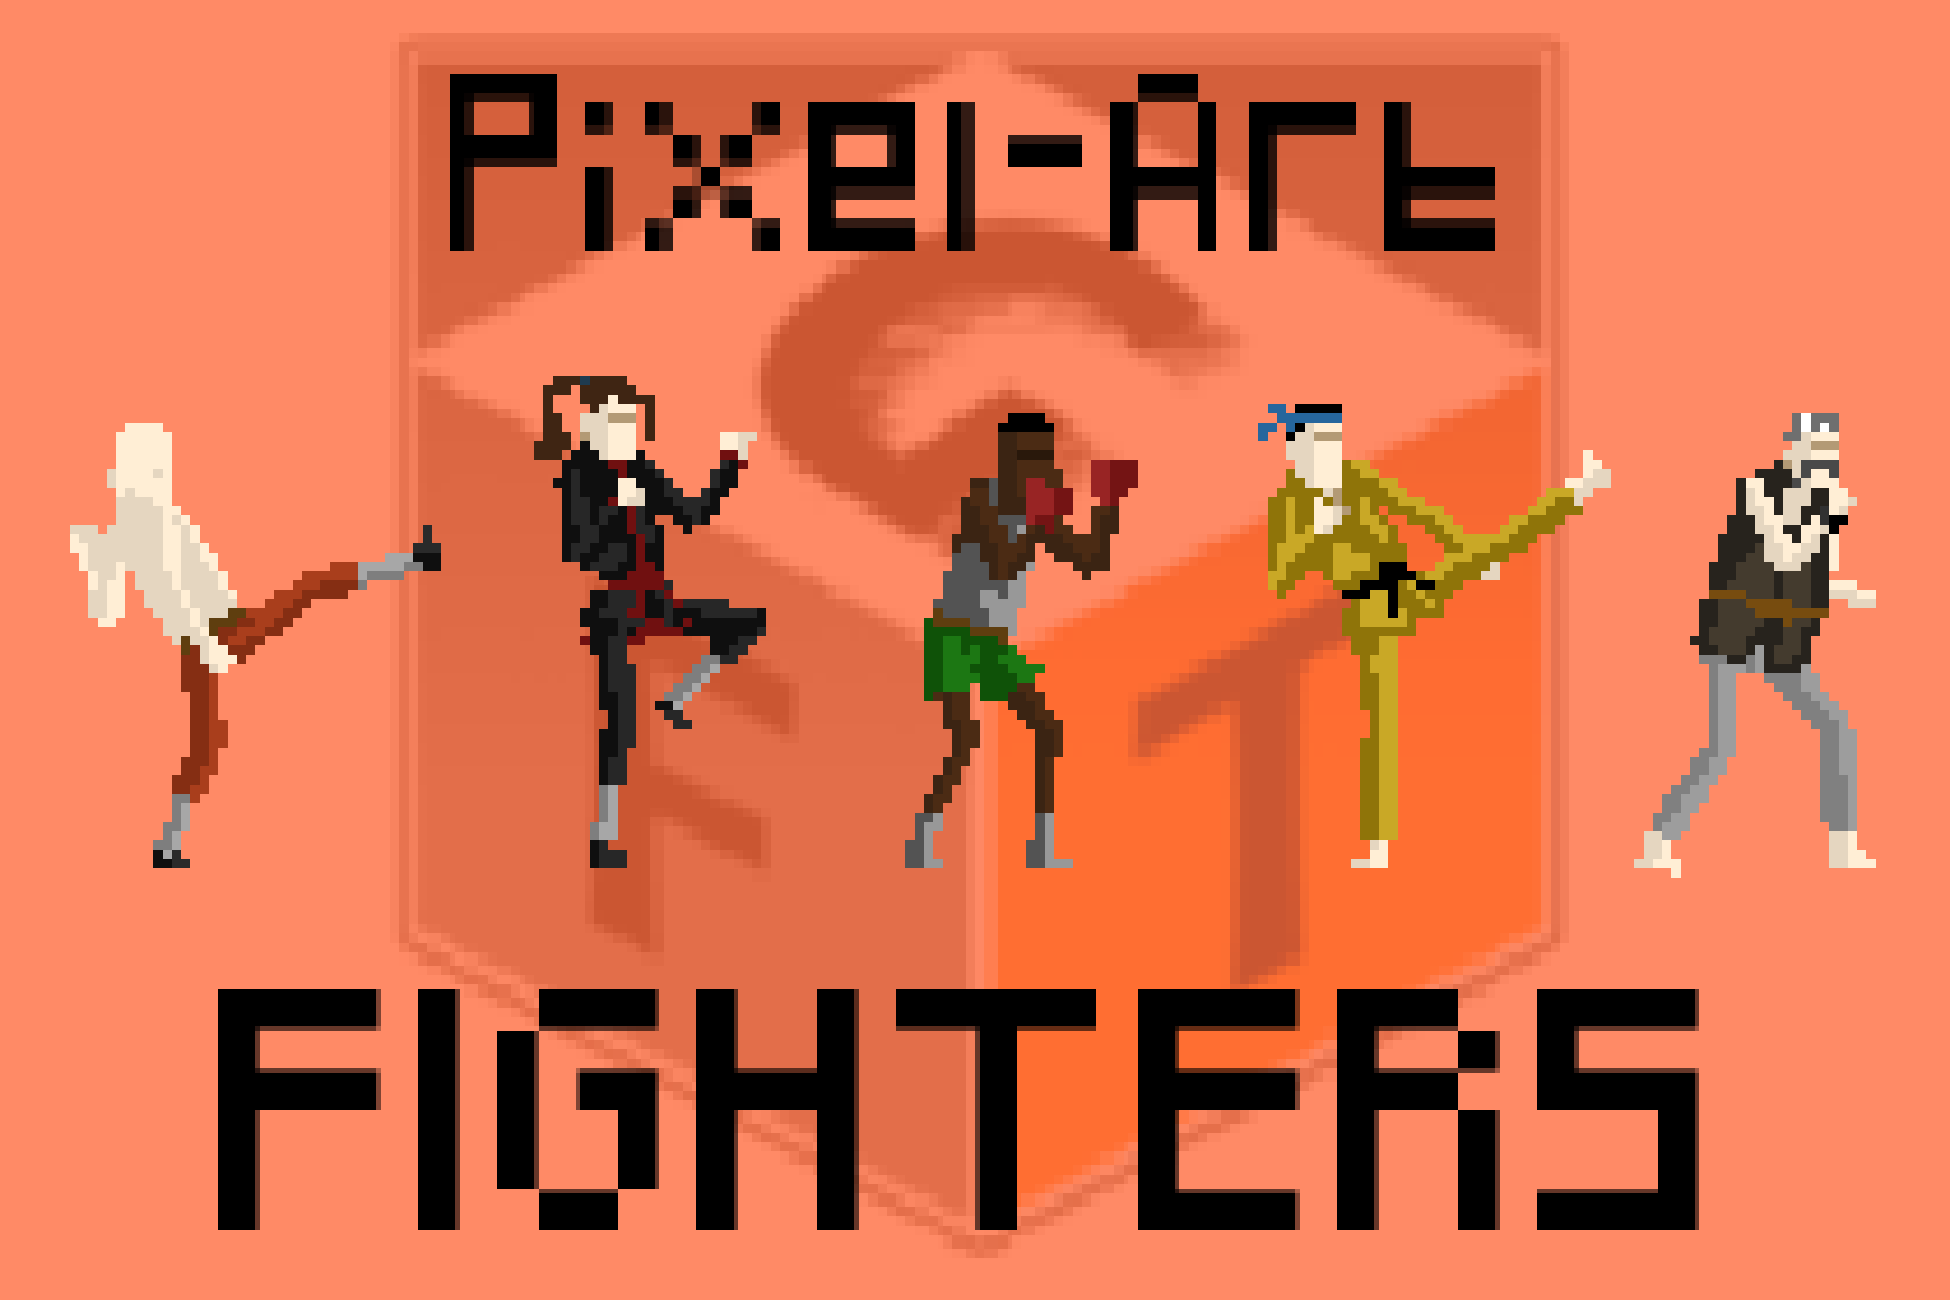 Pixel-Art Characters - Fighters by RaulDiaz